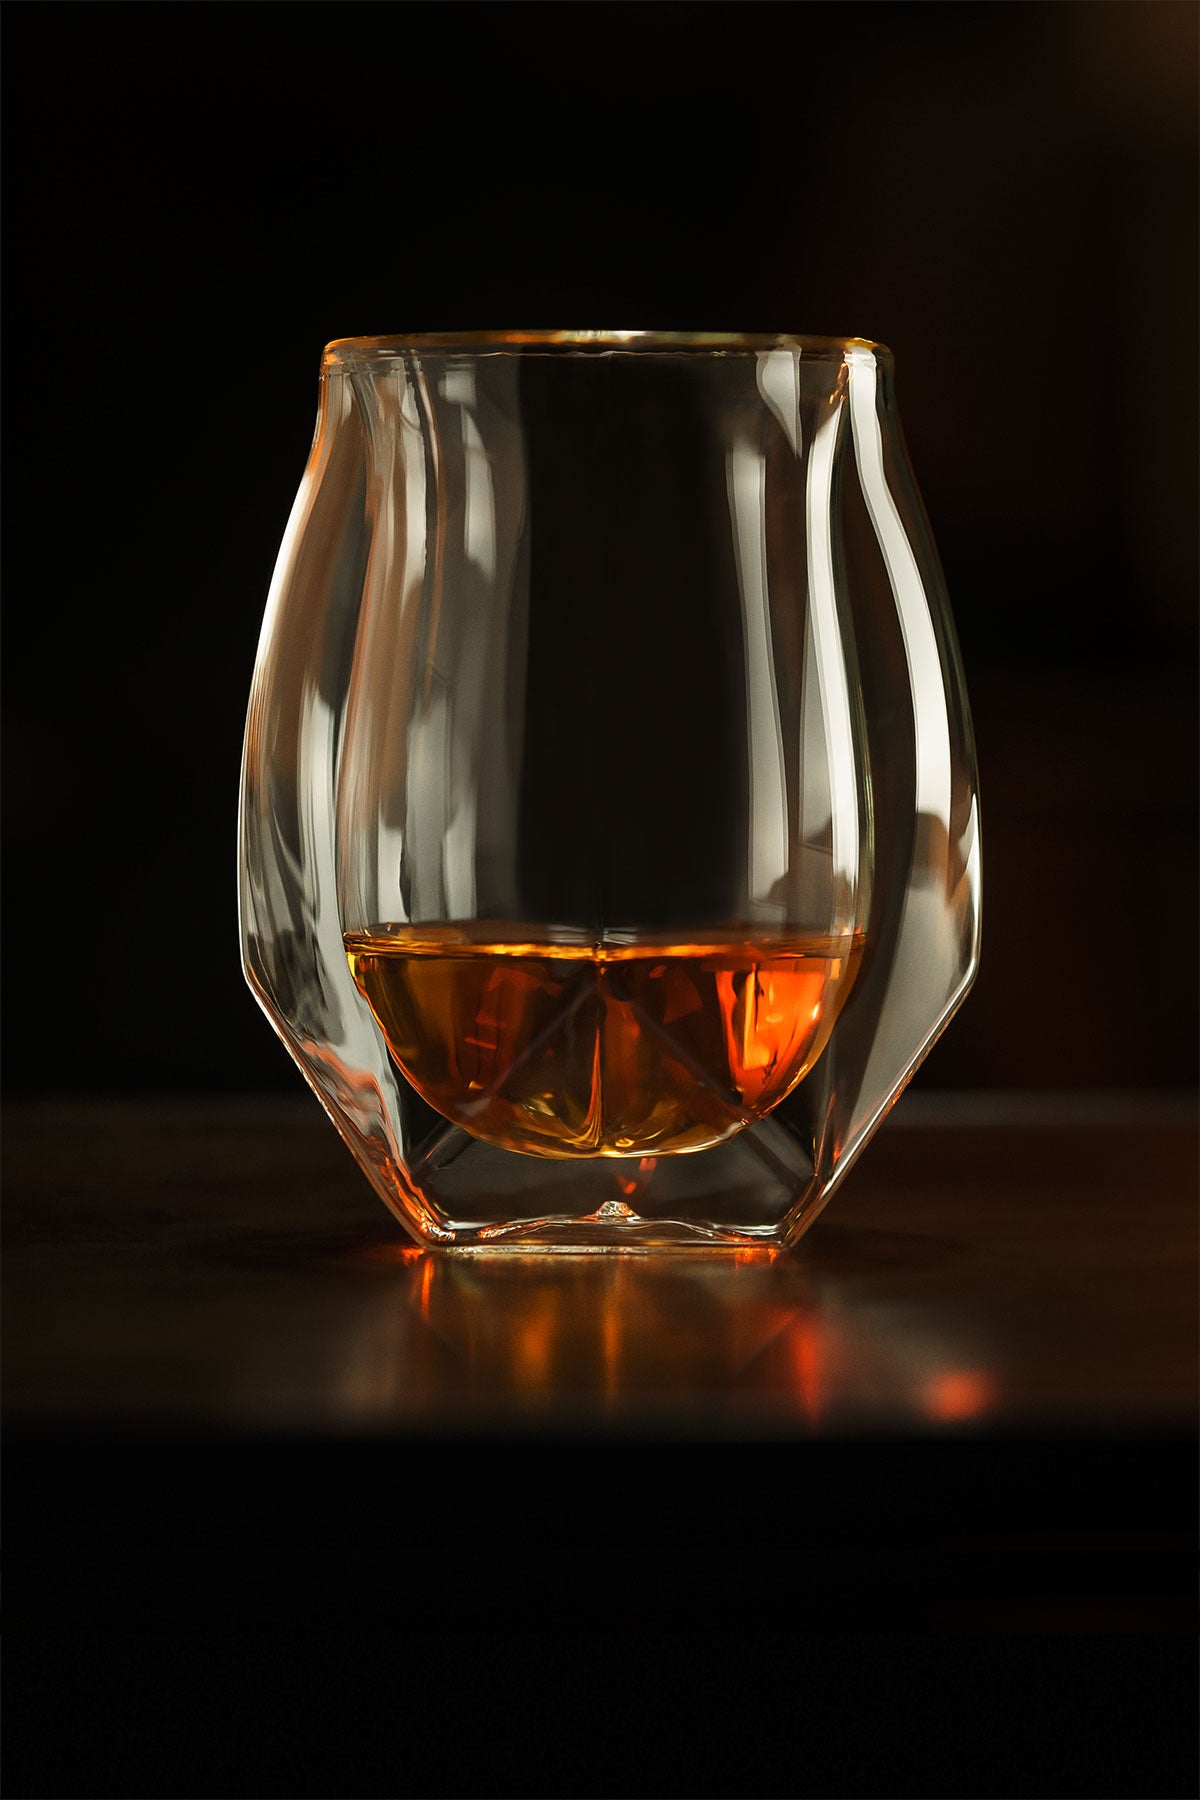 https://norlanglass.com/cdn/shop/files/Norlan-Whisky-Glass-Beautiful-Feature-M.jpg?v=1667384595&width=1500